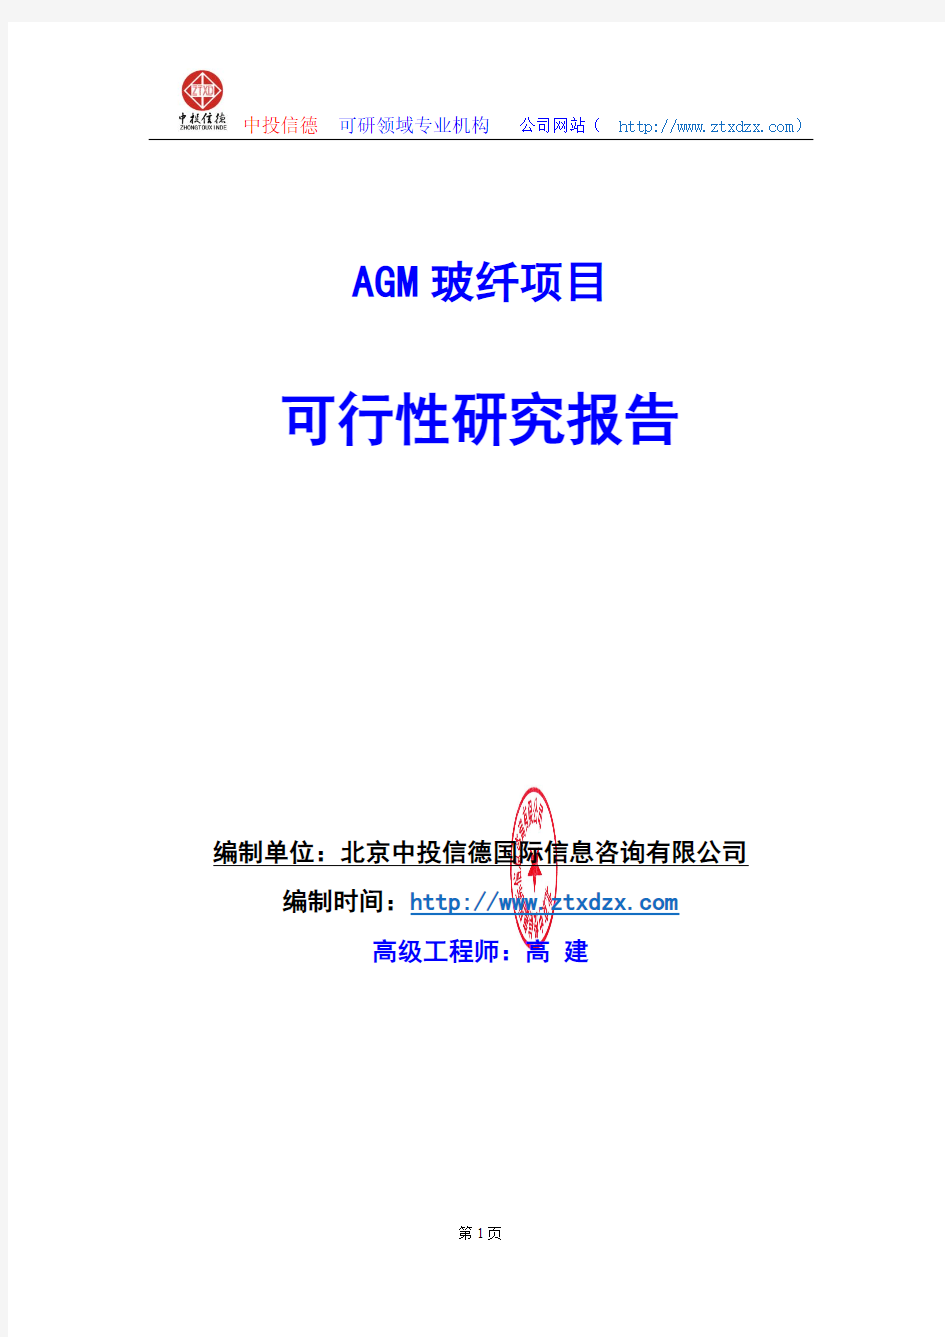 关于编制AGM玻纤项目可行性研究报告编制说明